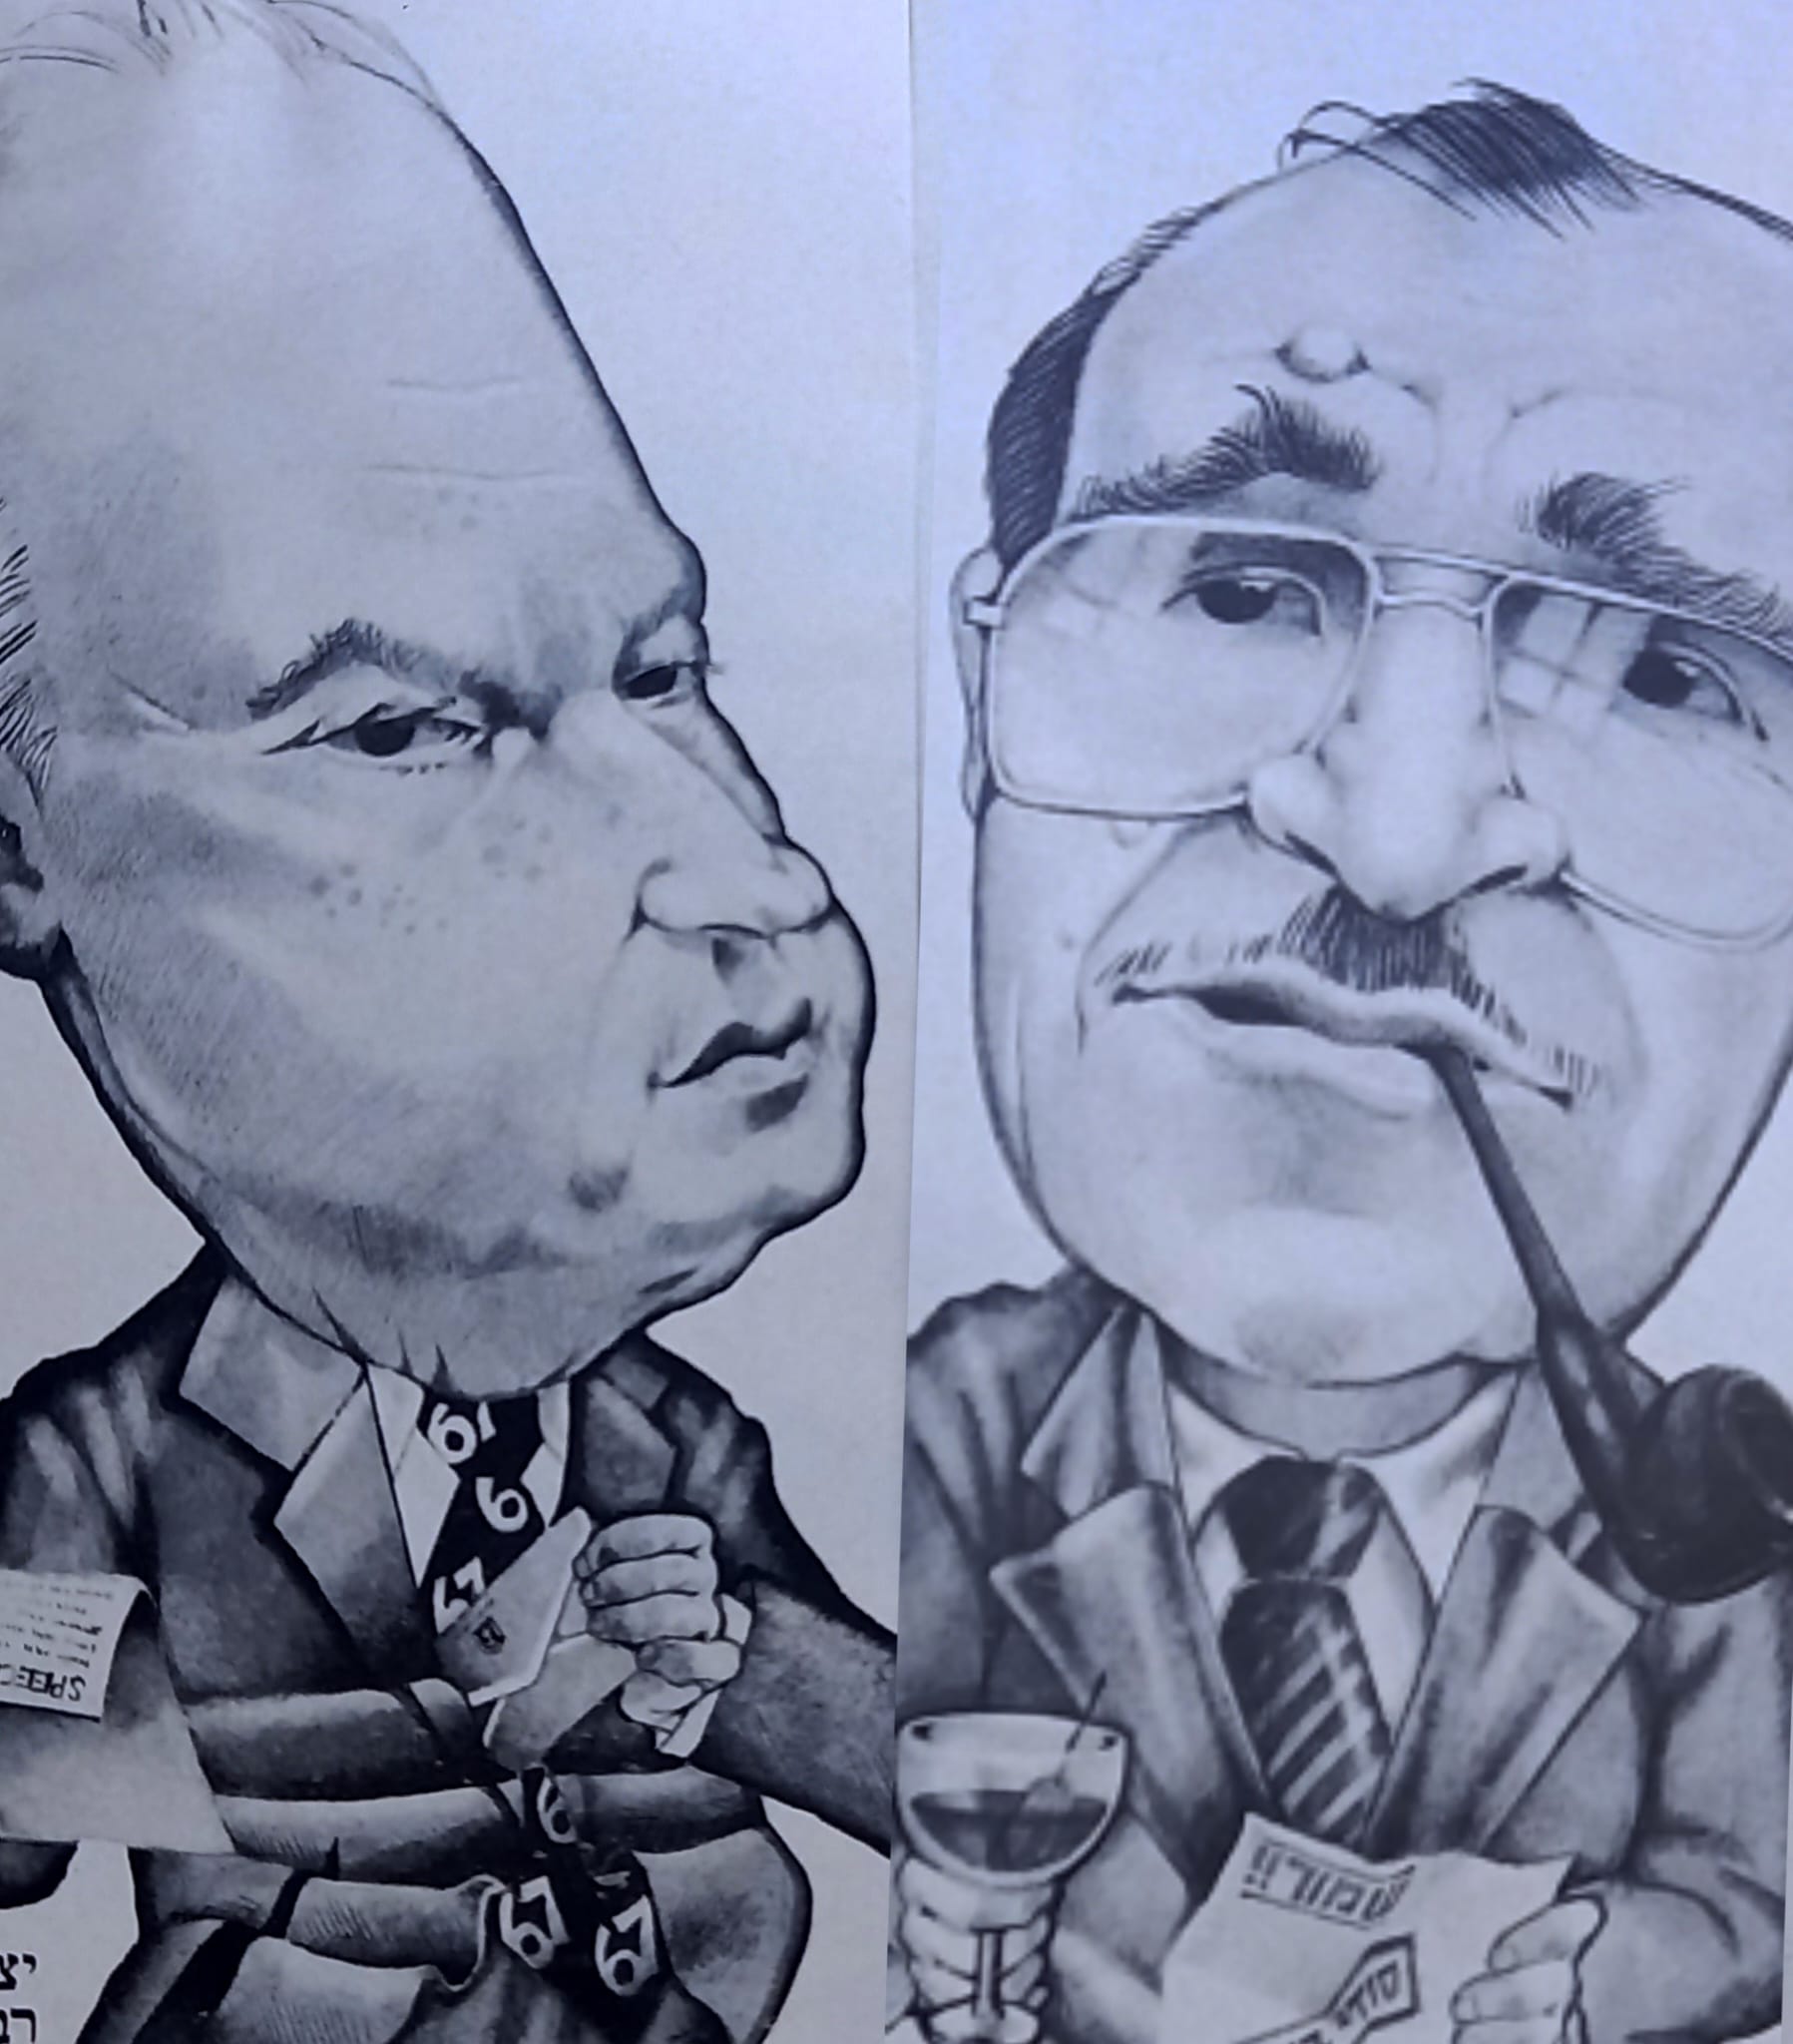 דמויות שצייר עבור מאמר פוליטי בירחון ''מוניטין'' 1979. מימין, שגריר ישראל בארה''ב שמחה דיניץ, משמאל, יצחק רבין